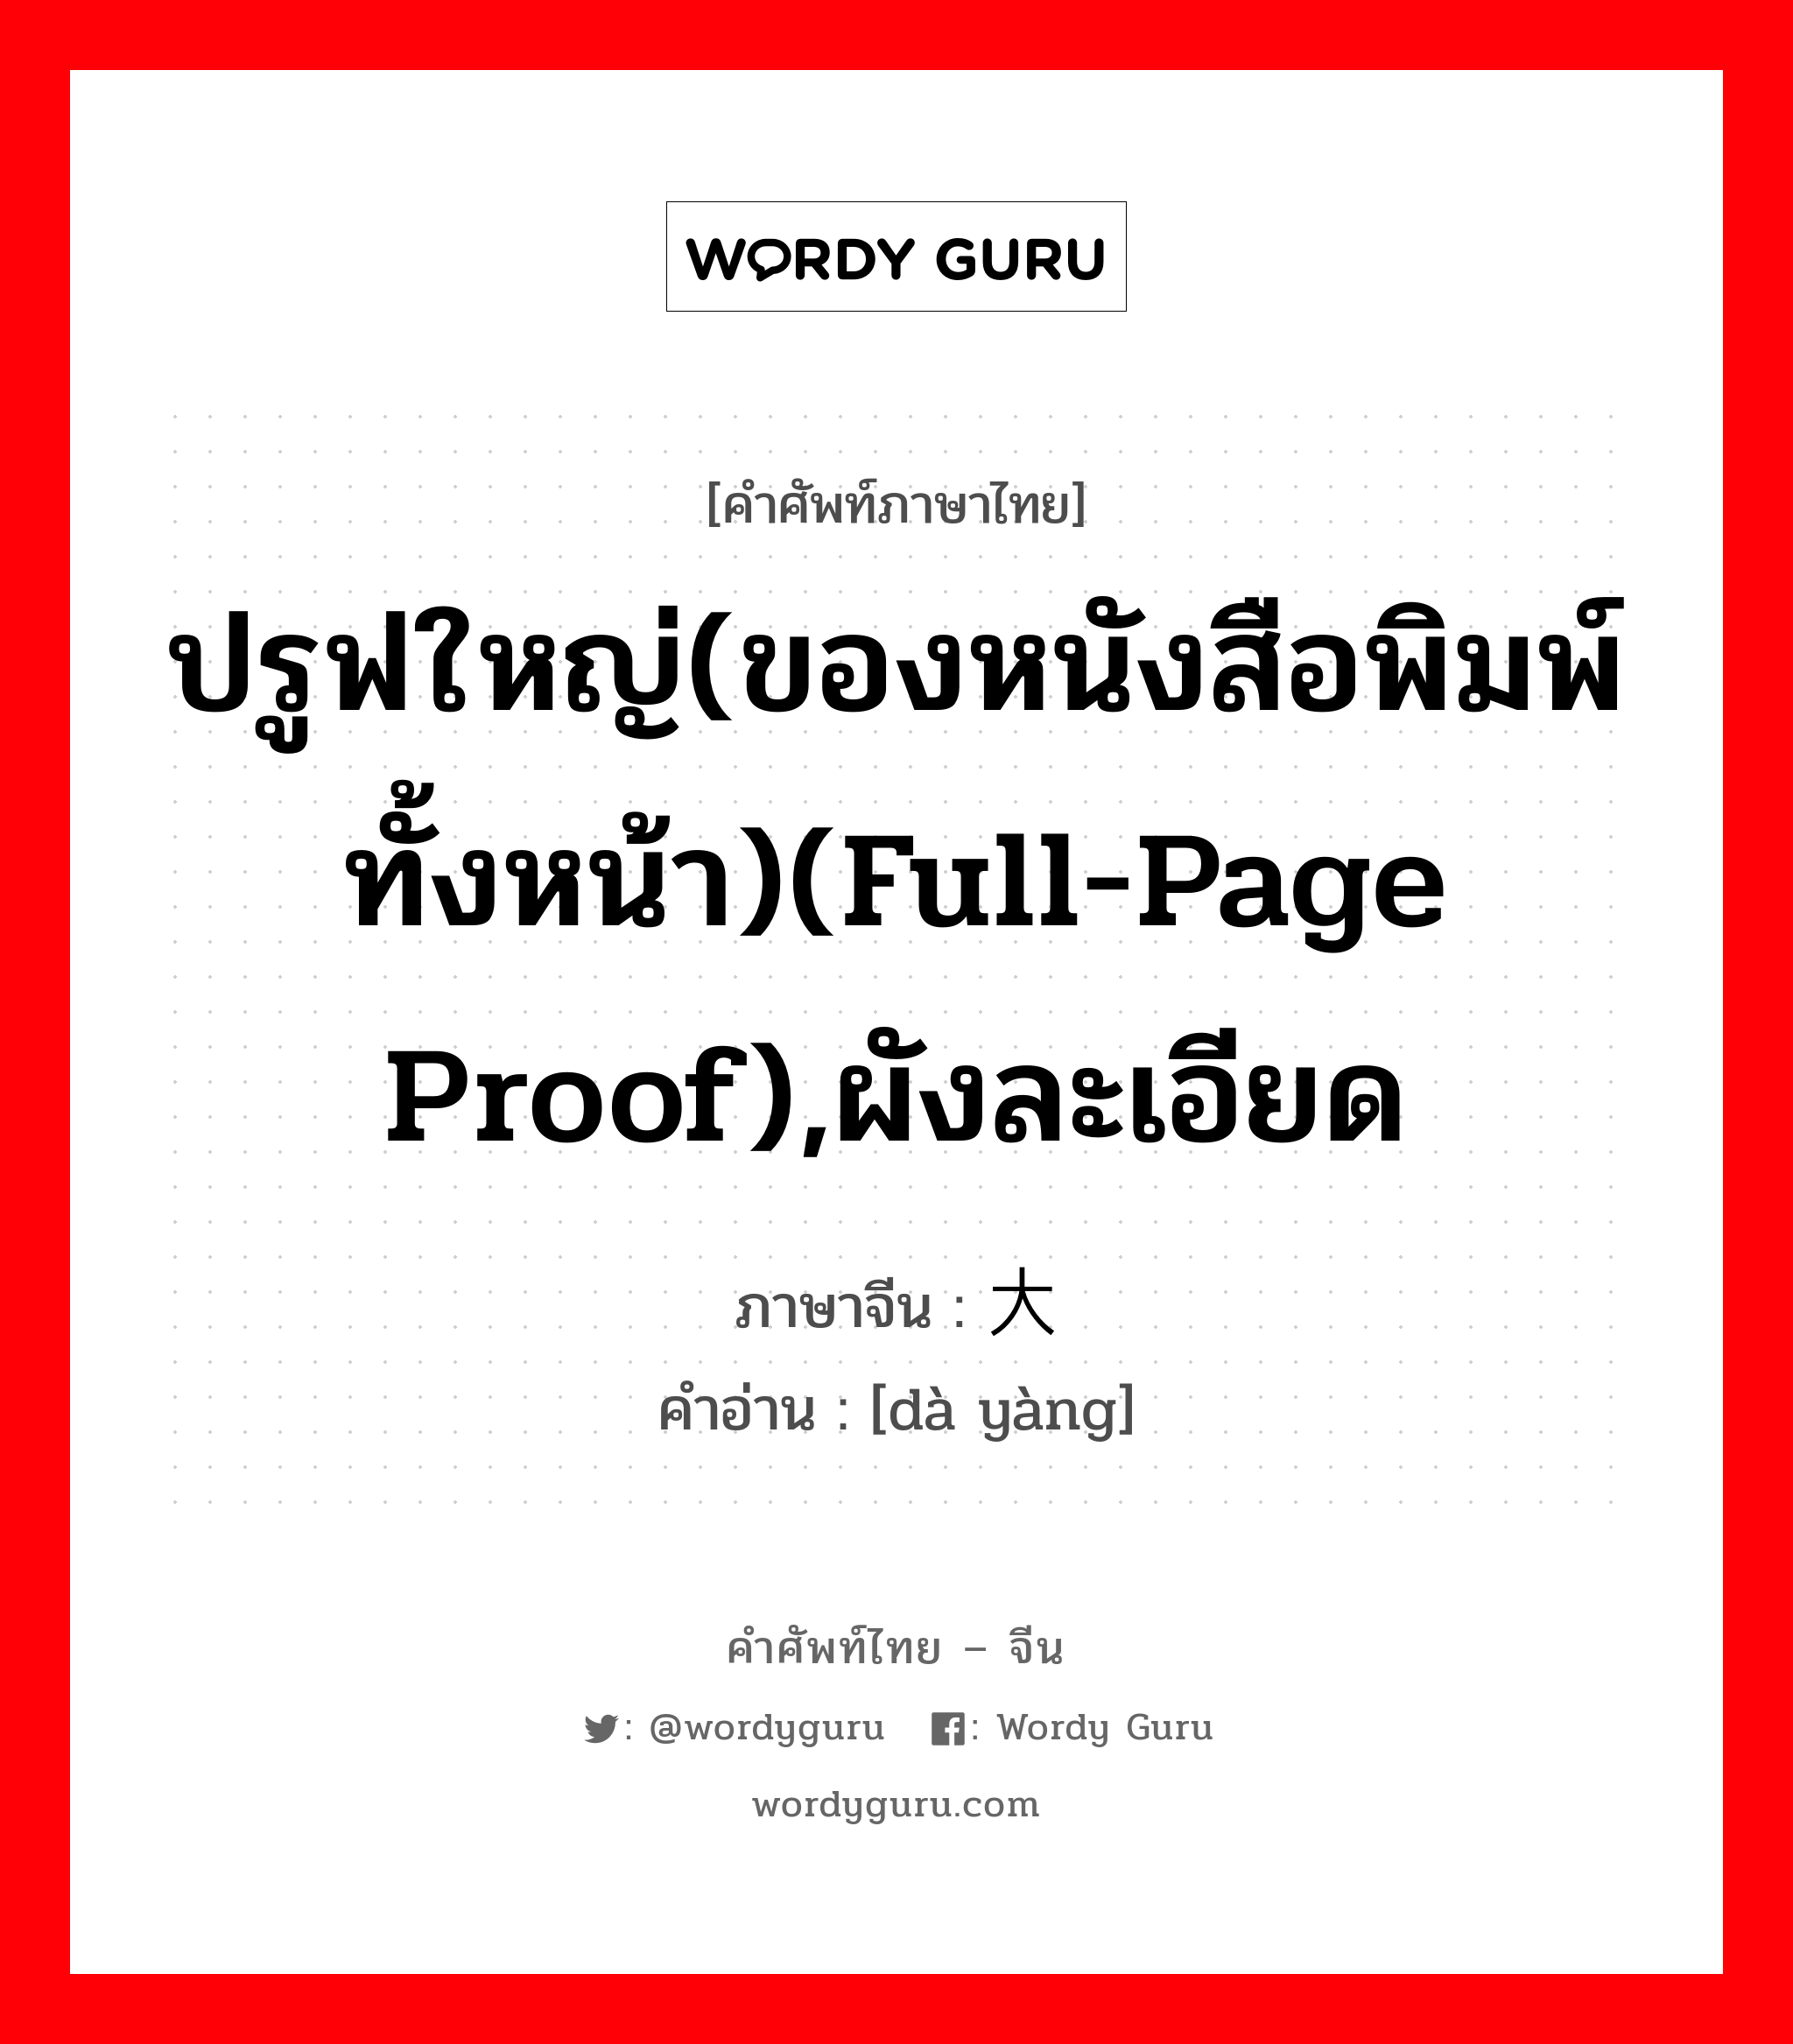 ปรูฟใหญ่(ของหนังสือพิมพ์ทั้งหน้า)(full-page proof),ผังละเอียด ภาษาจีนคืออะไร, คำศัพท์ภาษาไทย - จีน ปรูฟใหญ่(ของหนังสือพิมพ์ทั้งหน้า)(full-page proof),ผังละเอียด ภาษาจีน 大样 คำอ่าน [dà yàng]